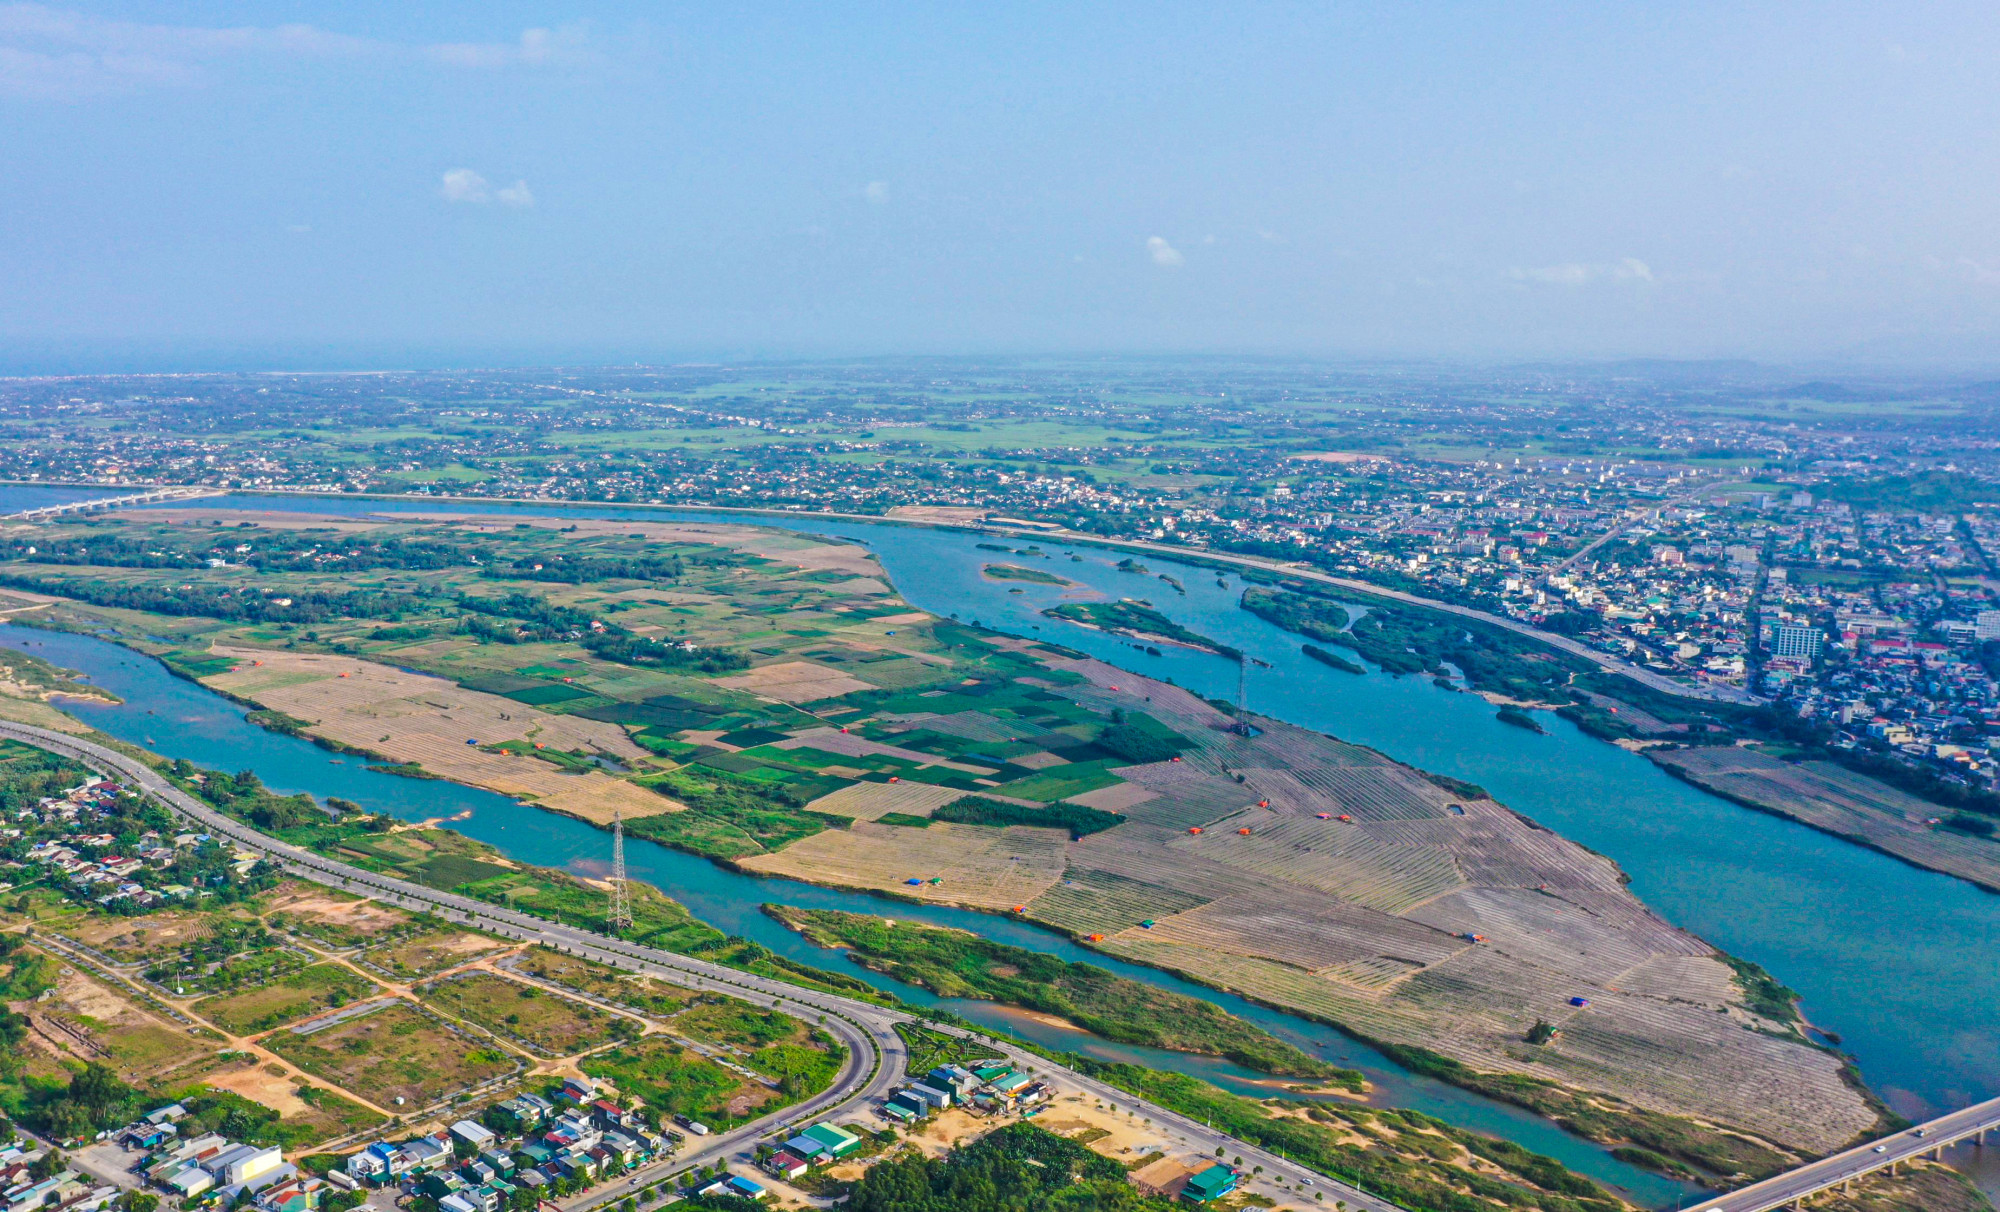 khu đô thị mới An Phú tổng kinh phí khoảng 3.800 tỉ đồng nằm giữa sông Trà Khúc